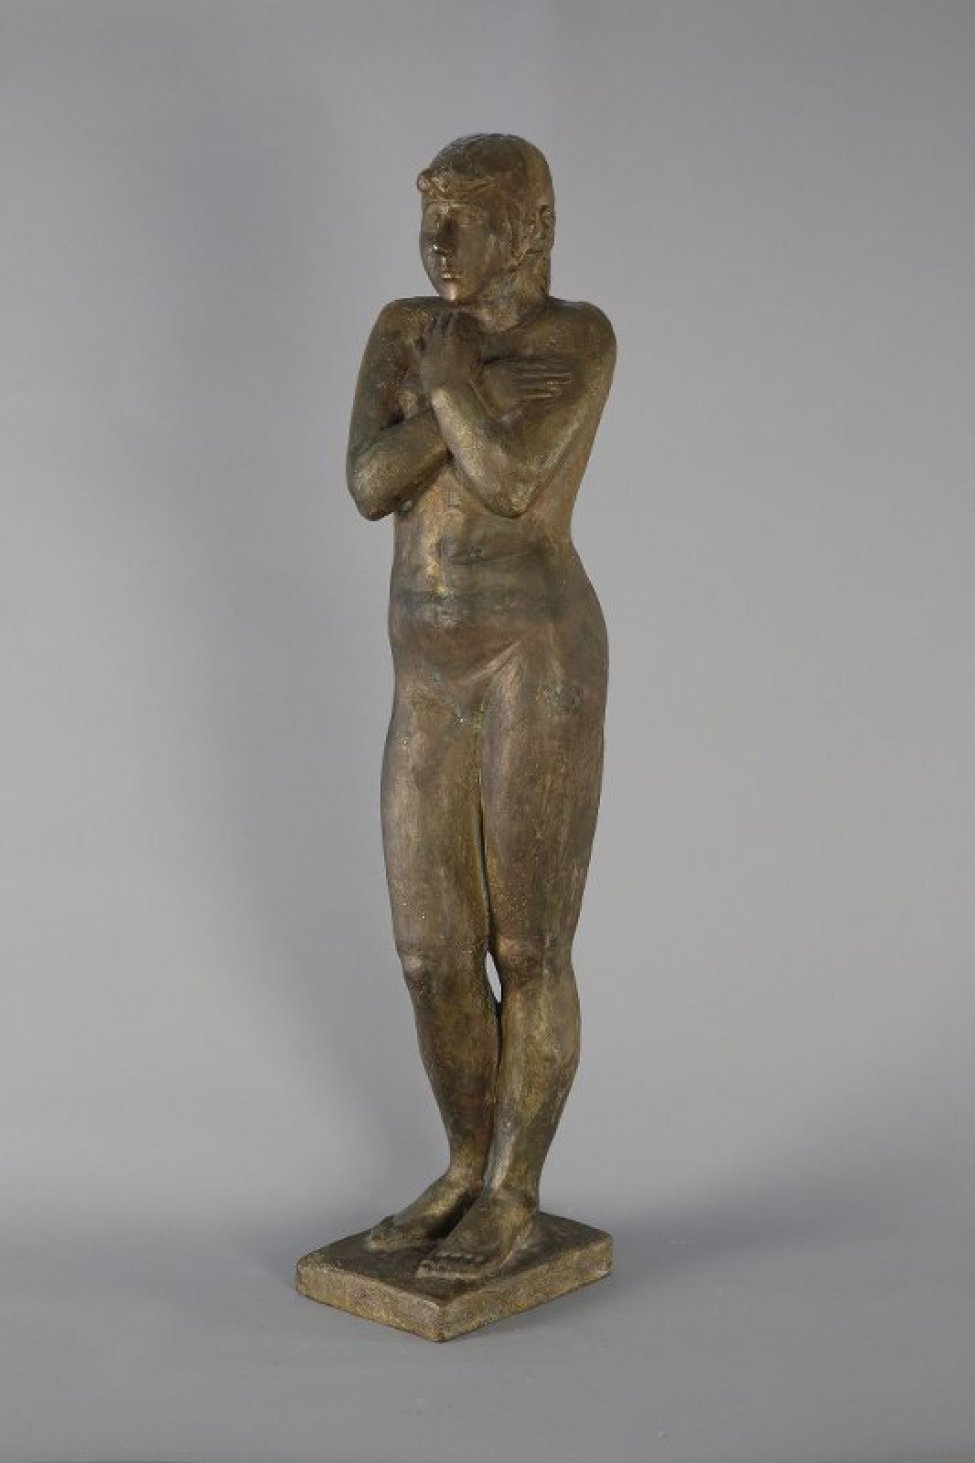 На низком прямоугольном плинте, изображена обнаженная женская фигура в рост, со скрещенными на груди руками. Правая нога чуть согнута в колене, правое плечо выдвинуто вперед. Голова повернута к правому плечу.